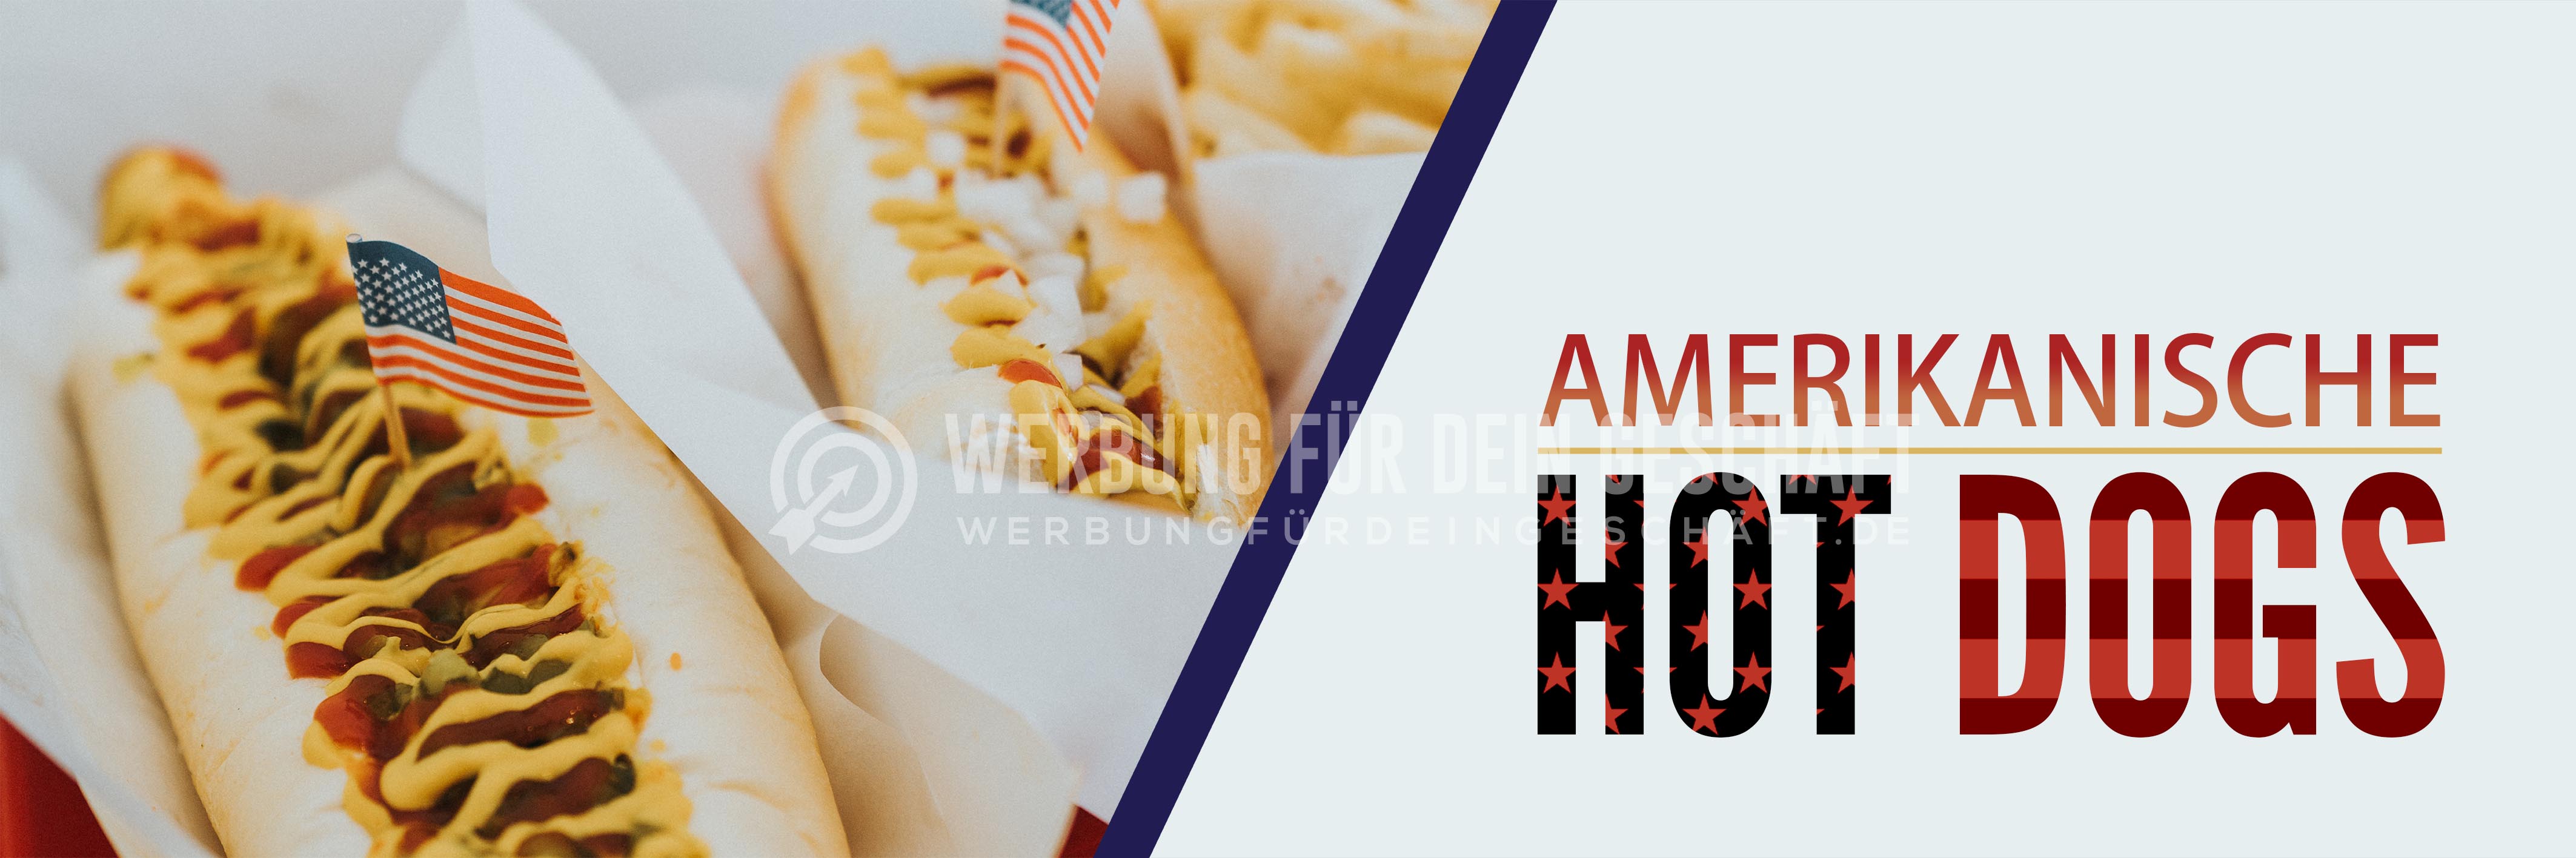 3:1 | Amerikanische Hot Dogs Plakat | Werbeposter für deinen Imbiss | 3 zu 1 Format